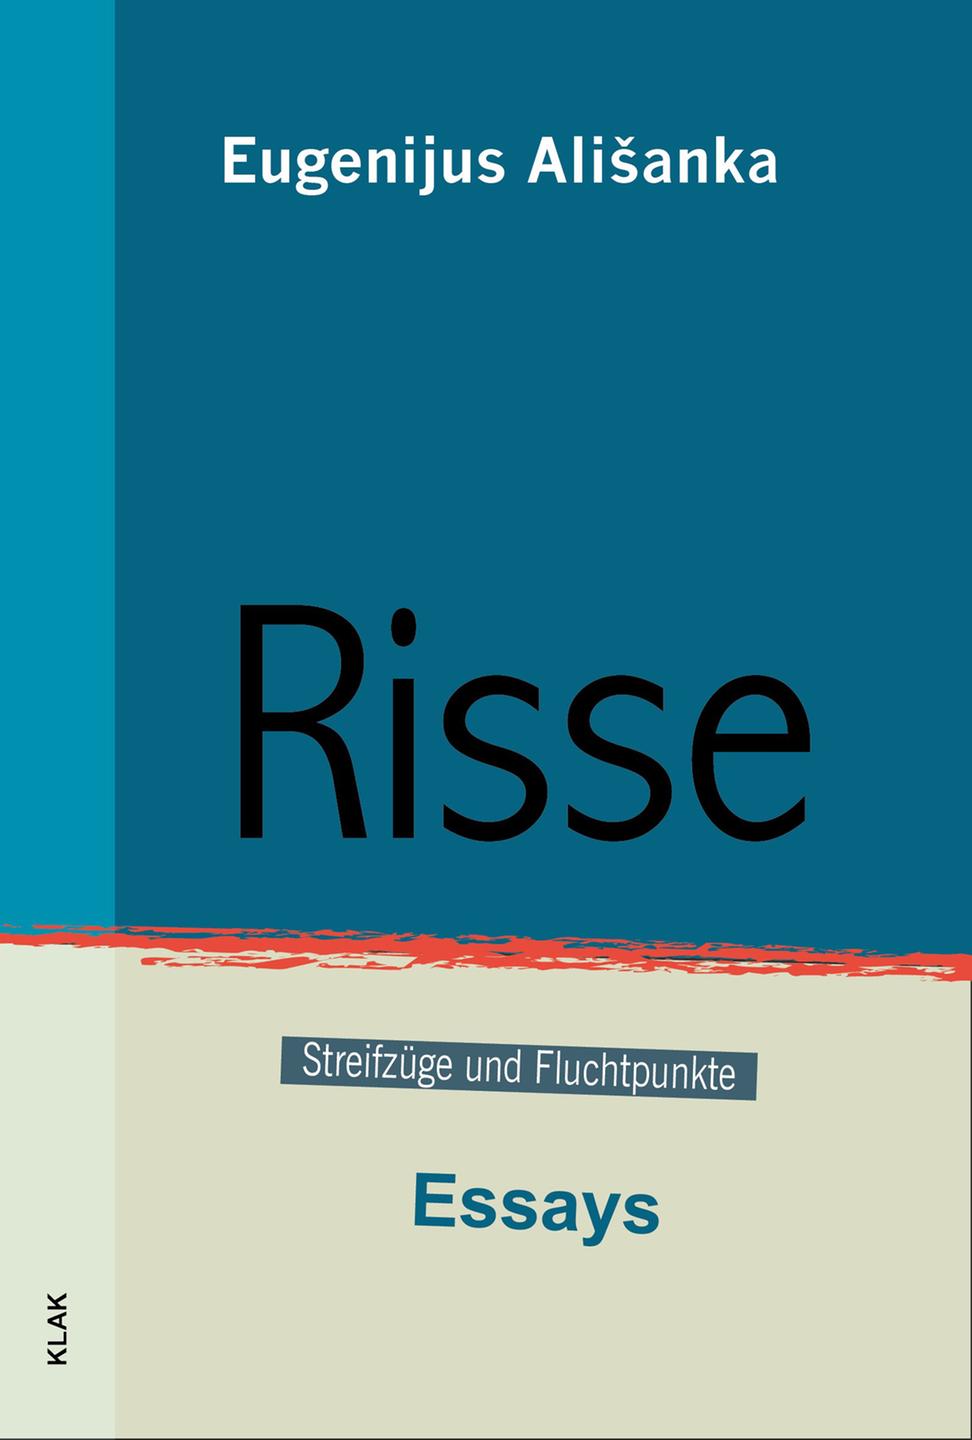 Buchcover: Eugenijus Ališanka: "Risse. Streifzüge und Fluchtpunkte. Essays”